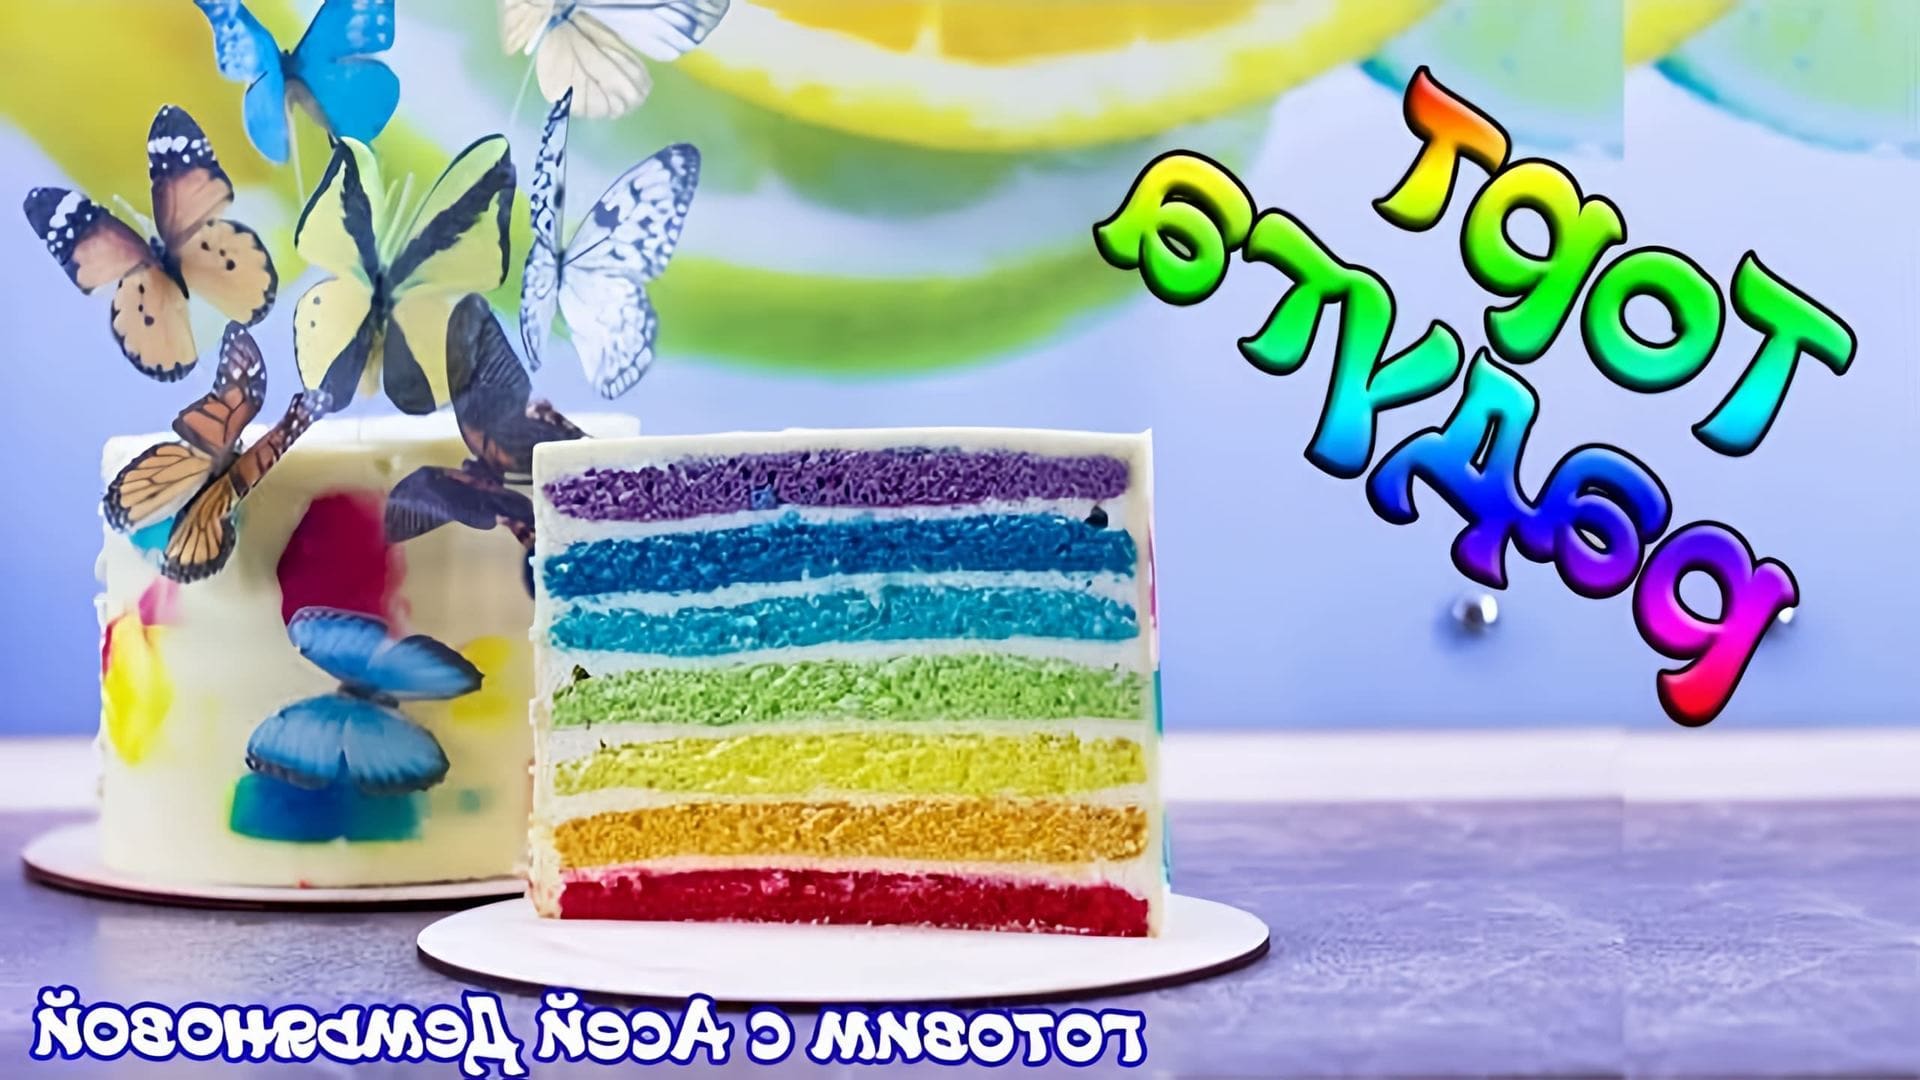 В этом видео демонстрируется рецепт торта "Молочная девочка", который можно собрать и украсить в радужном стиле